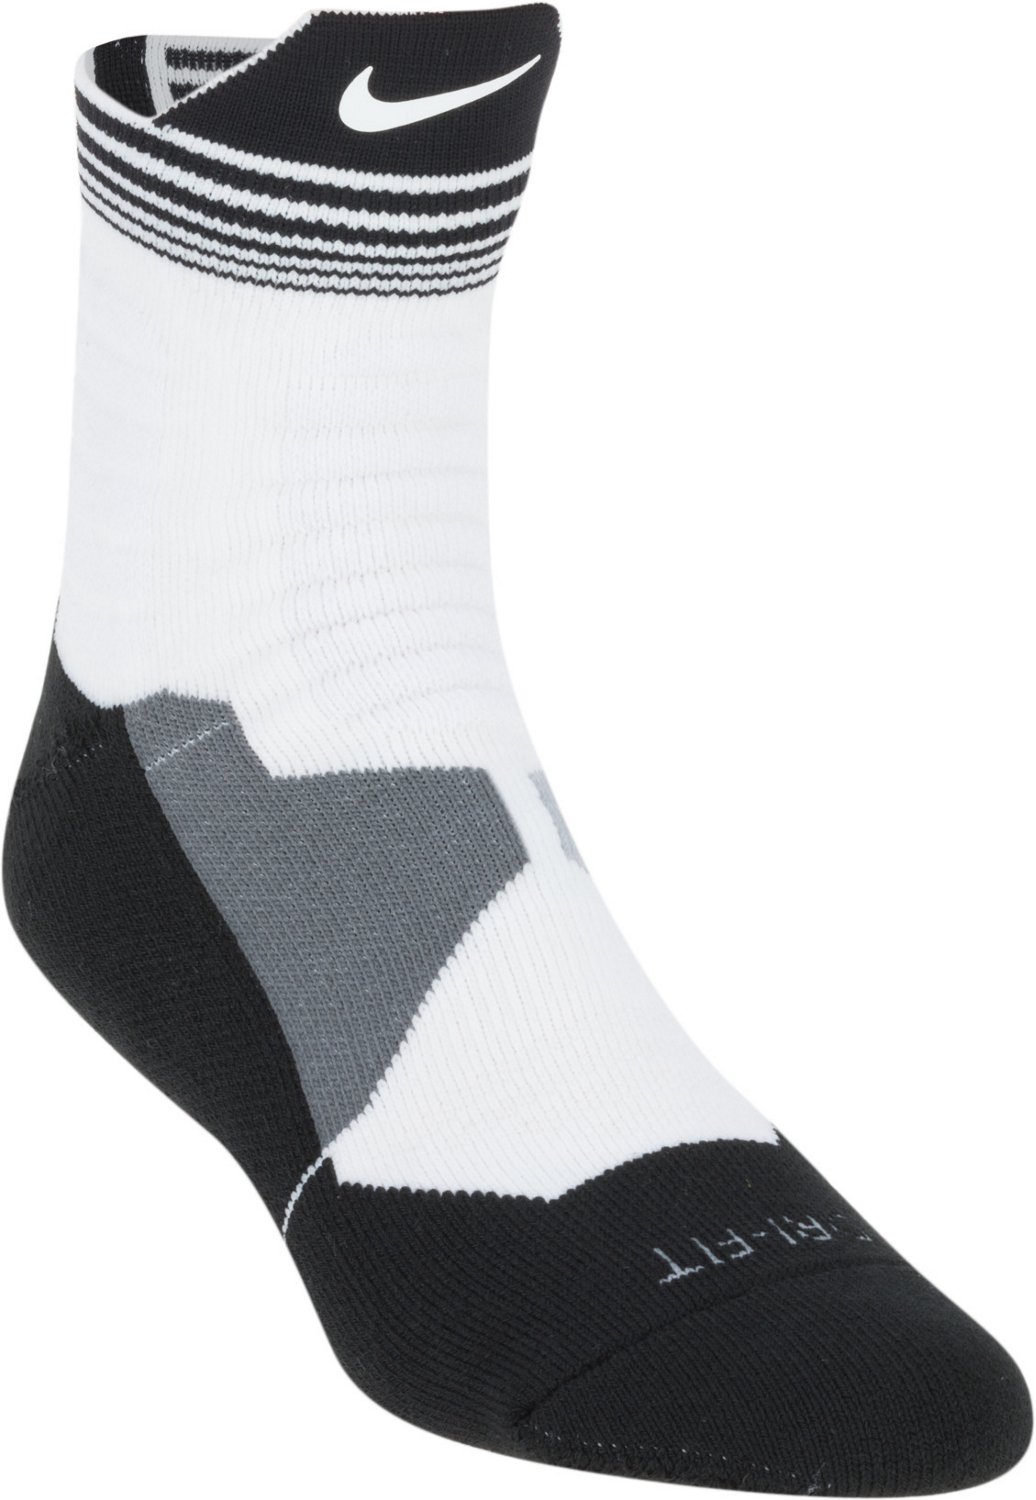 Nike Elite Socks | Nike Elite Basketball & Baseball Socks